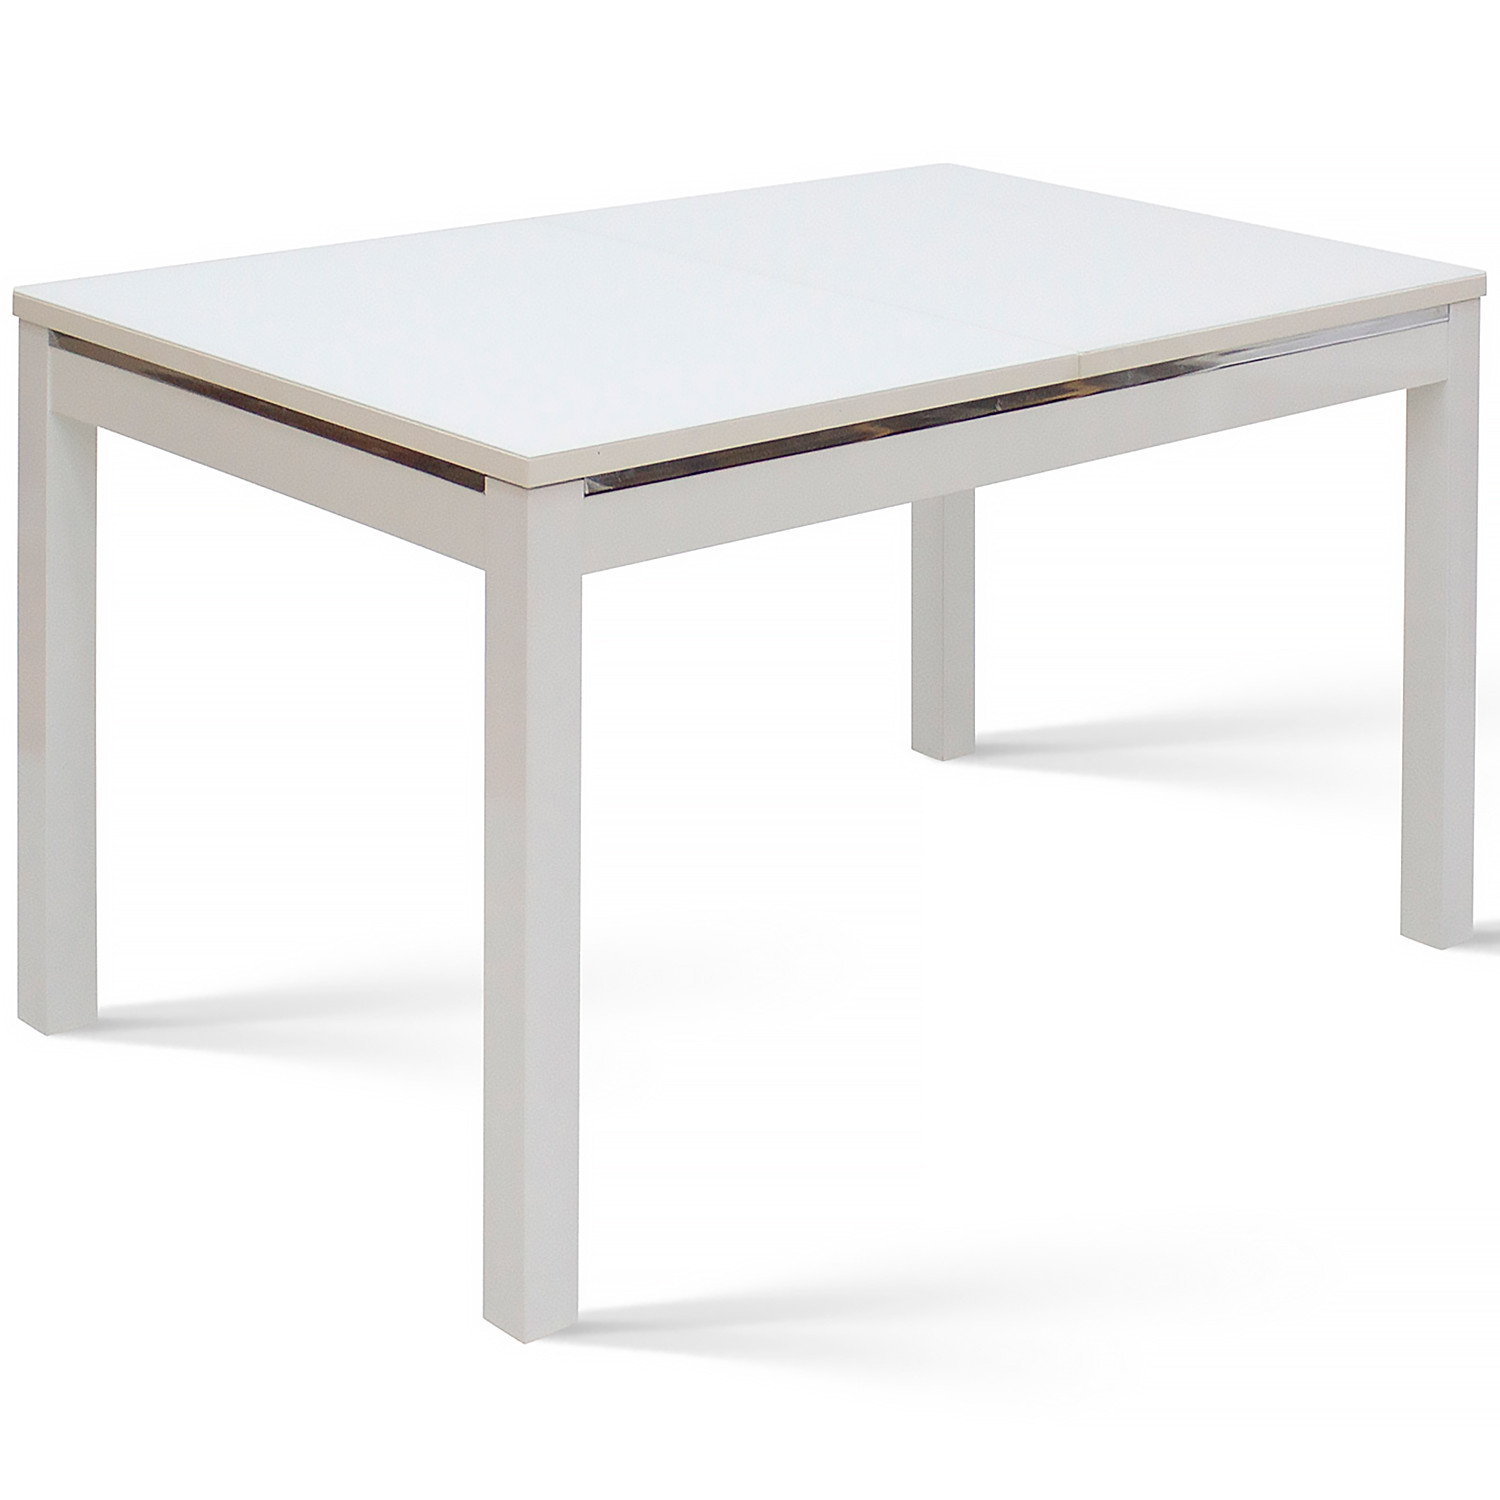 Обеденные столы Барон 2 белый фото 1 — New Style of Furniture